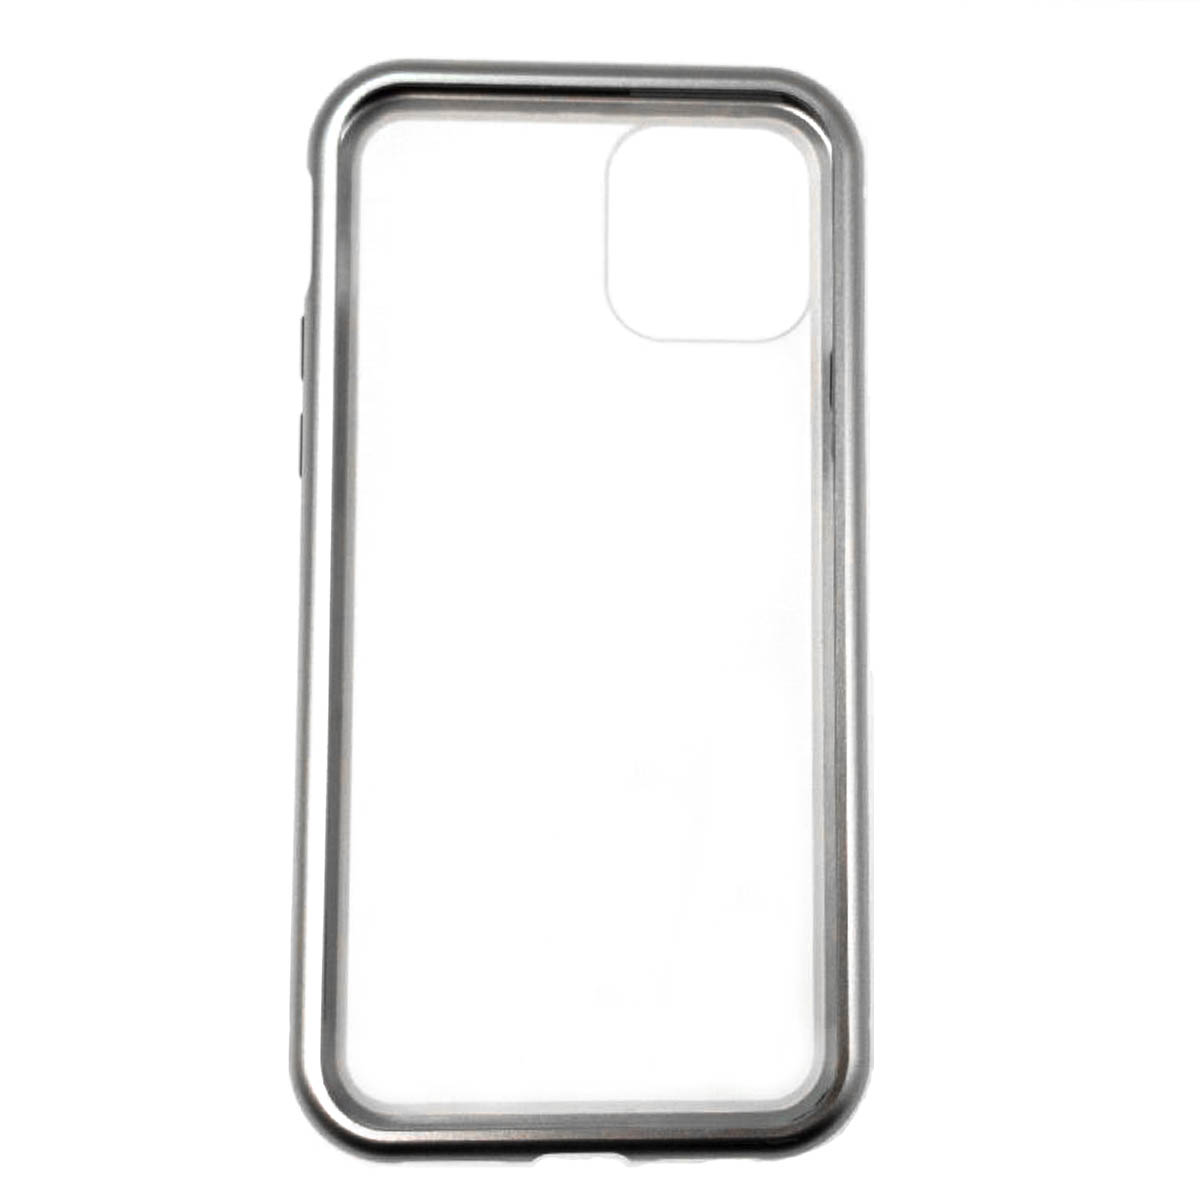 Чехол магнитный для APPLE iPhone 11 2019, закаленное стекло, металл, цвет серебристо прозрачный.